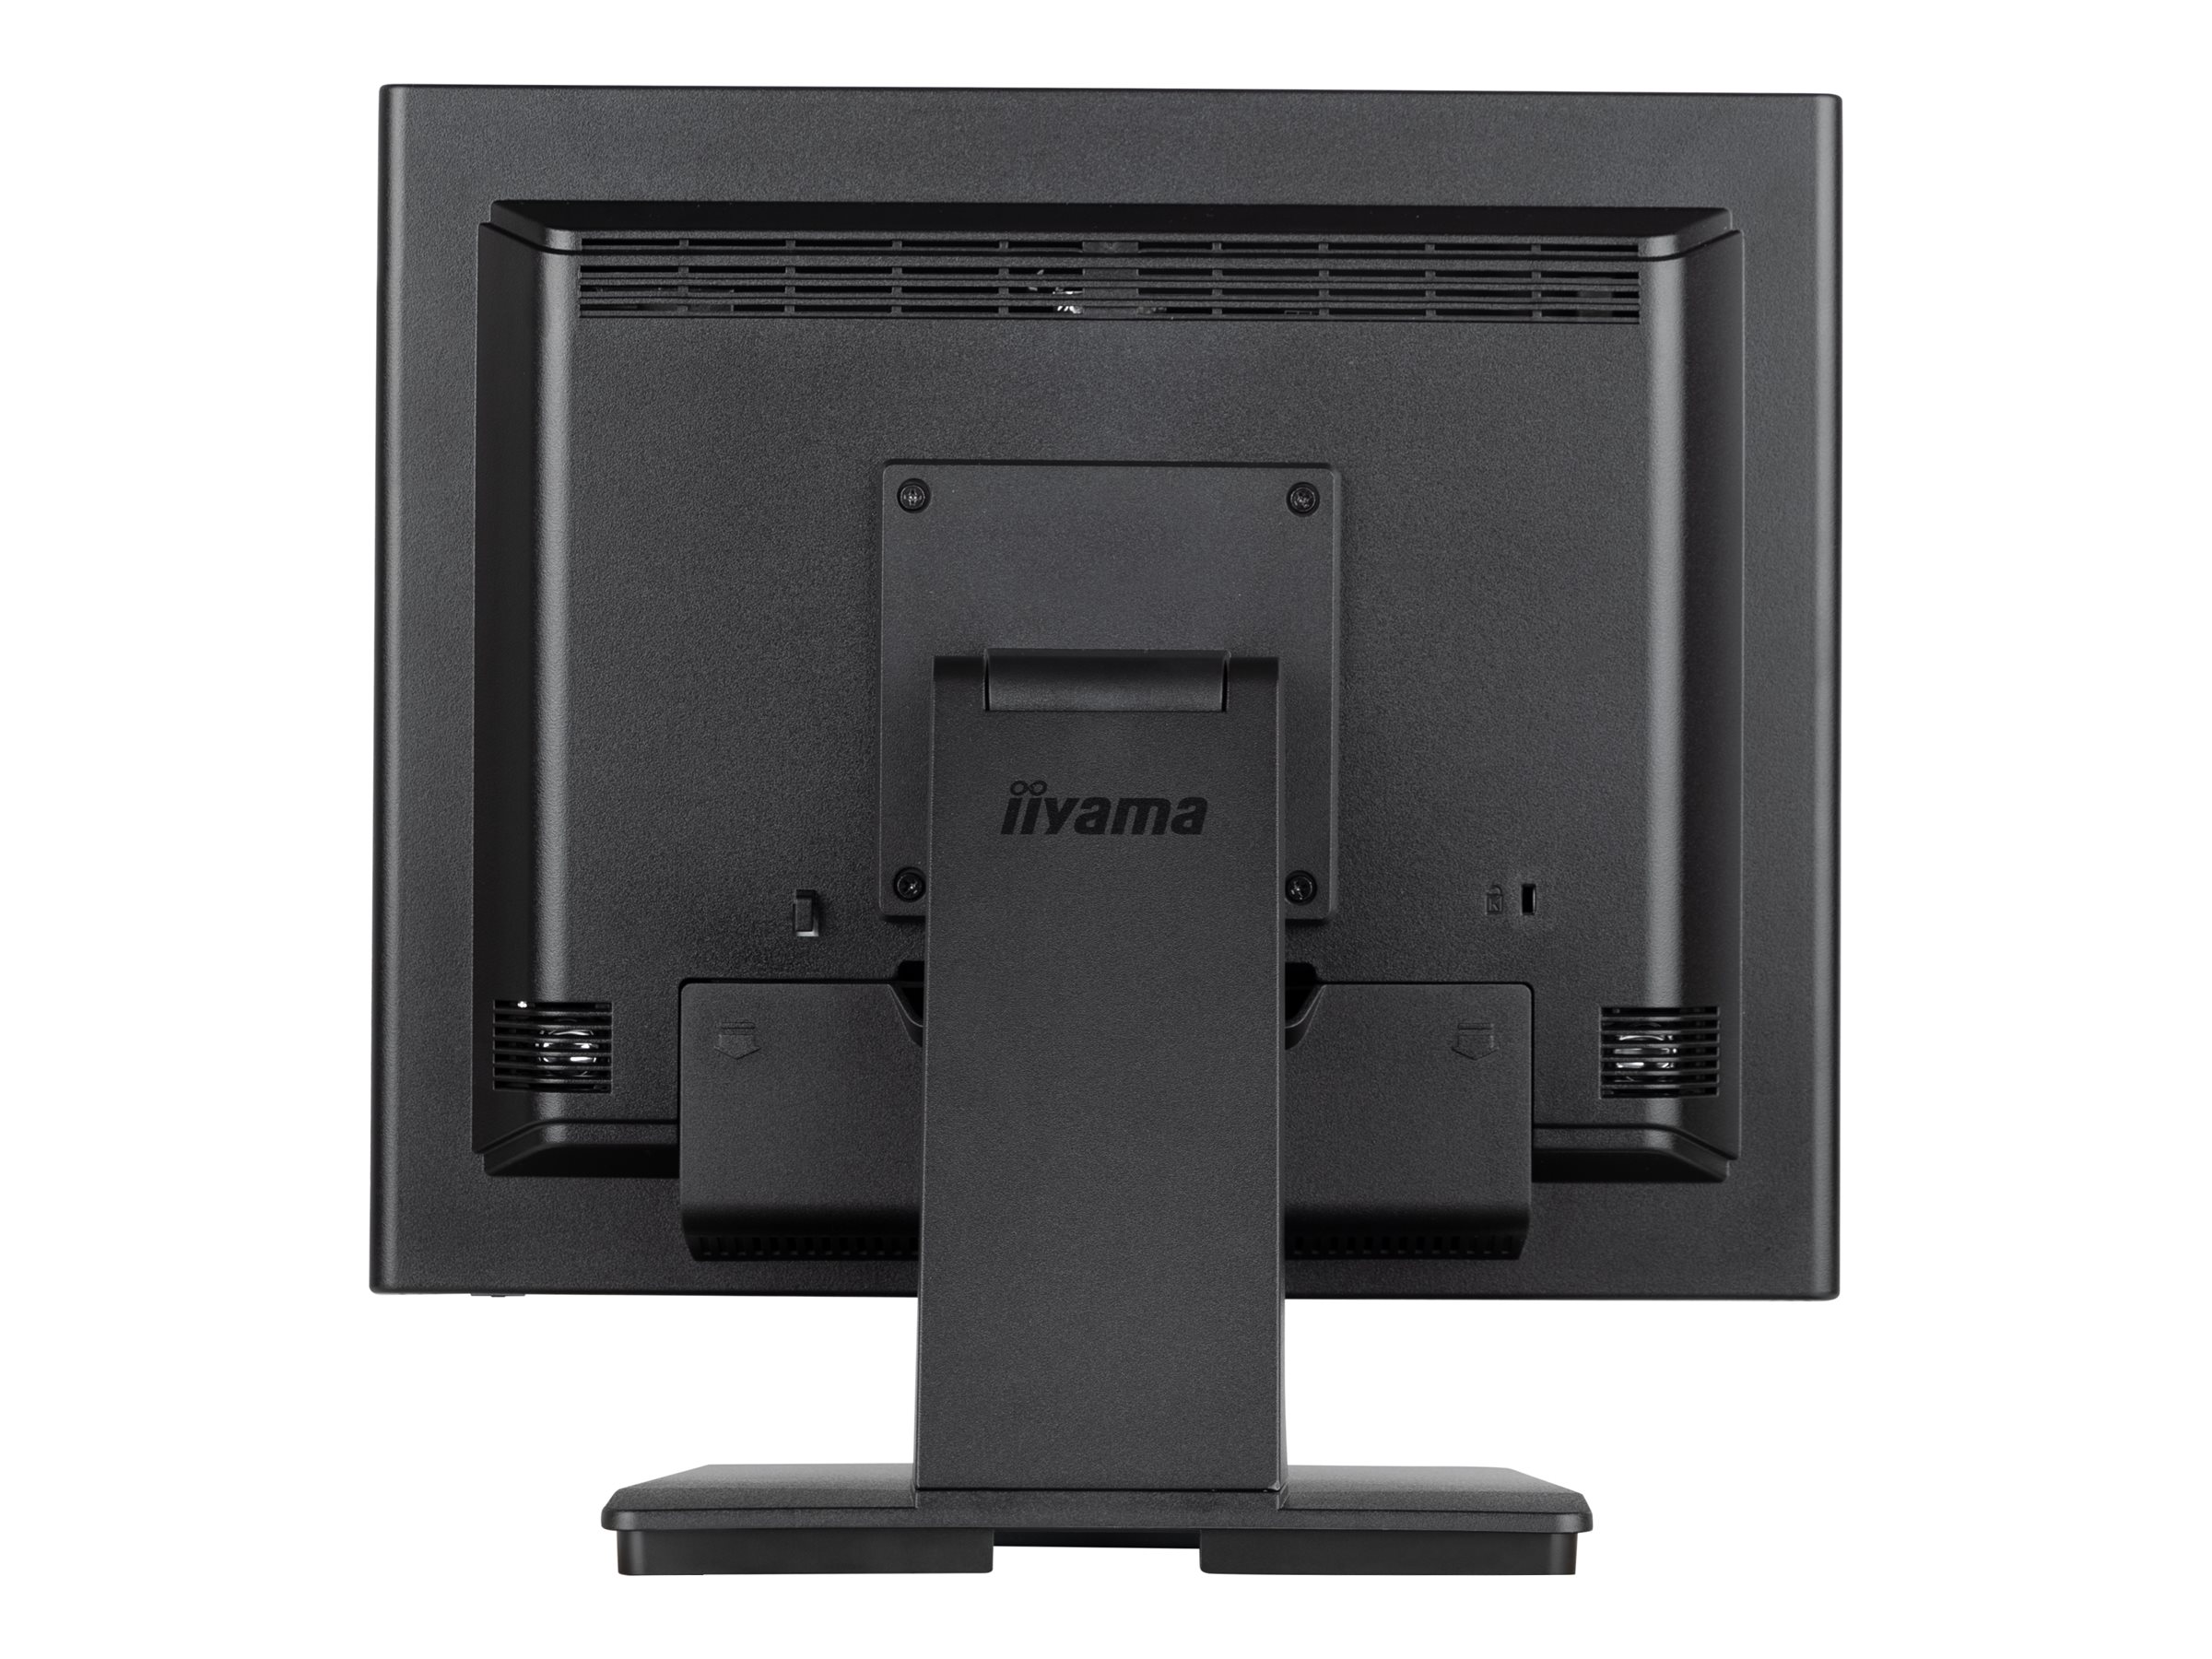 iiyama ProLite T1732MSC-B1SAG - Écran LED - 17" - écran tactile - 1280 x 1024 @ 75 Hz - TN - 250 cd/m² - 1000:1 - 5 ms - HDMI, VGA, DisplayPort - haut-parleurs - noir, finition matte - T1732MSC-B1SAG - Écrans d'ordinateur